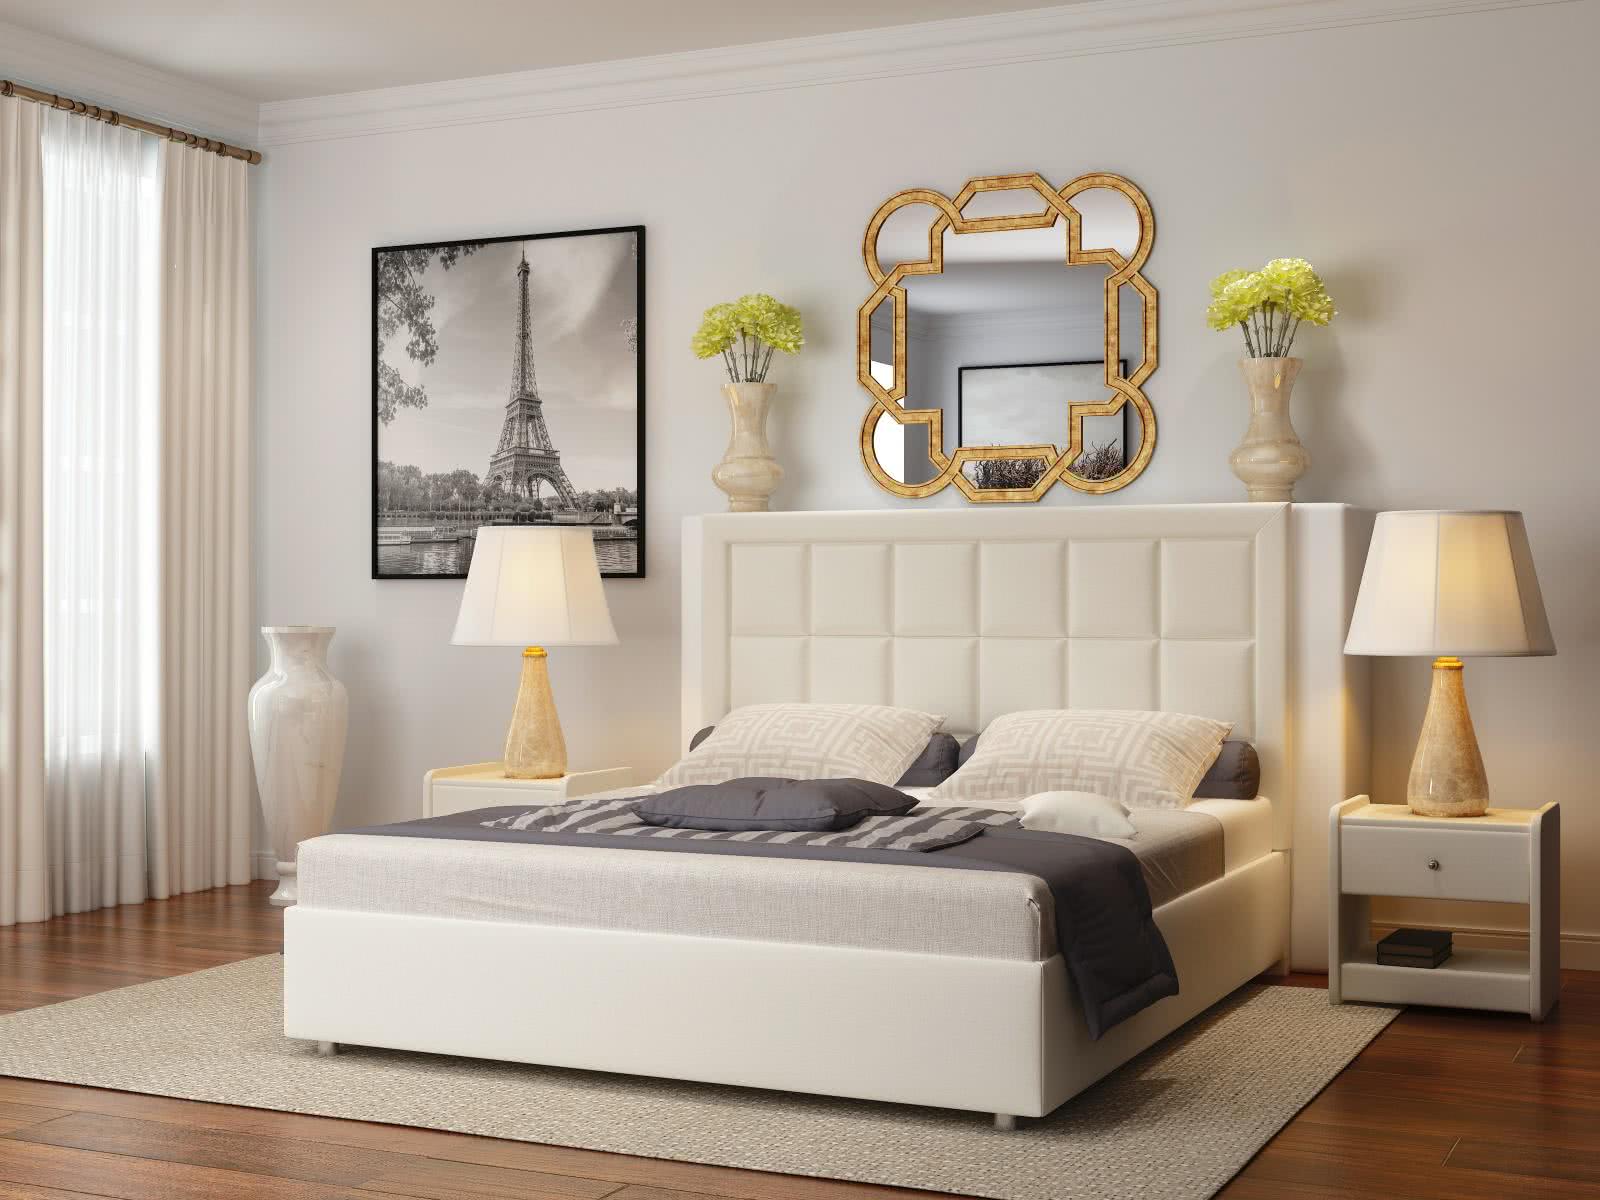 Купить кровать Sleeptek Premier 2 с подъемным механизмом (Экокожа)